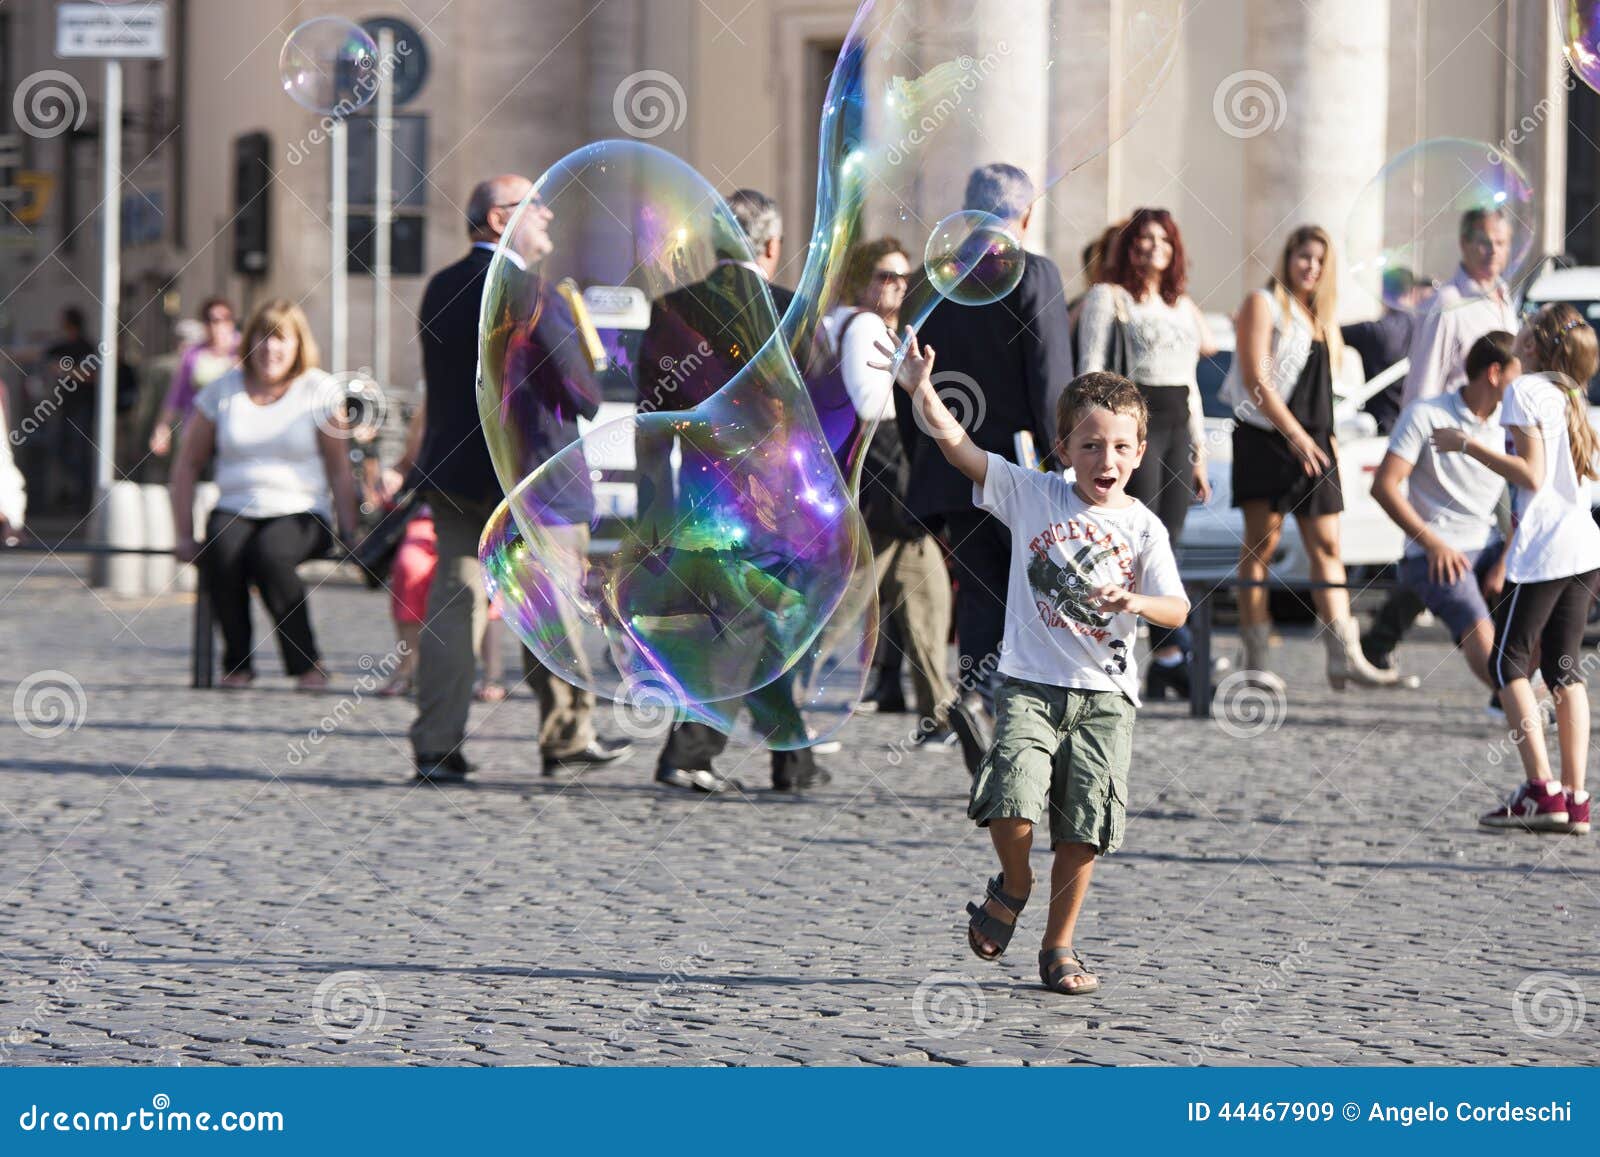 Criança feliz que corre para uma bolha de sabão. Uma criança feliz está correndo para alcançar uma grande bolha de sabão Atrás dele há muitos turistas em Praça del Popolo em Roma (Itália)